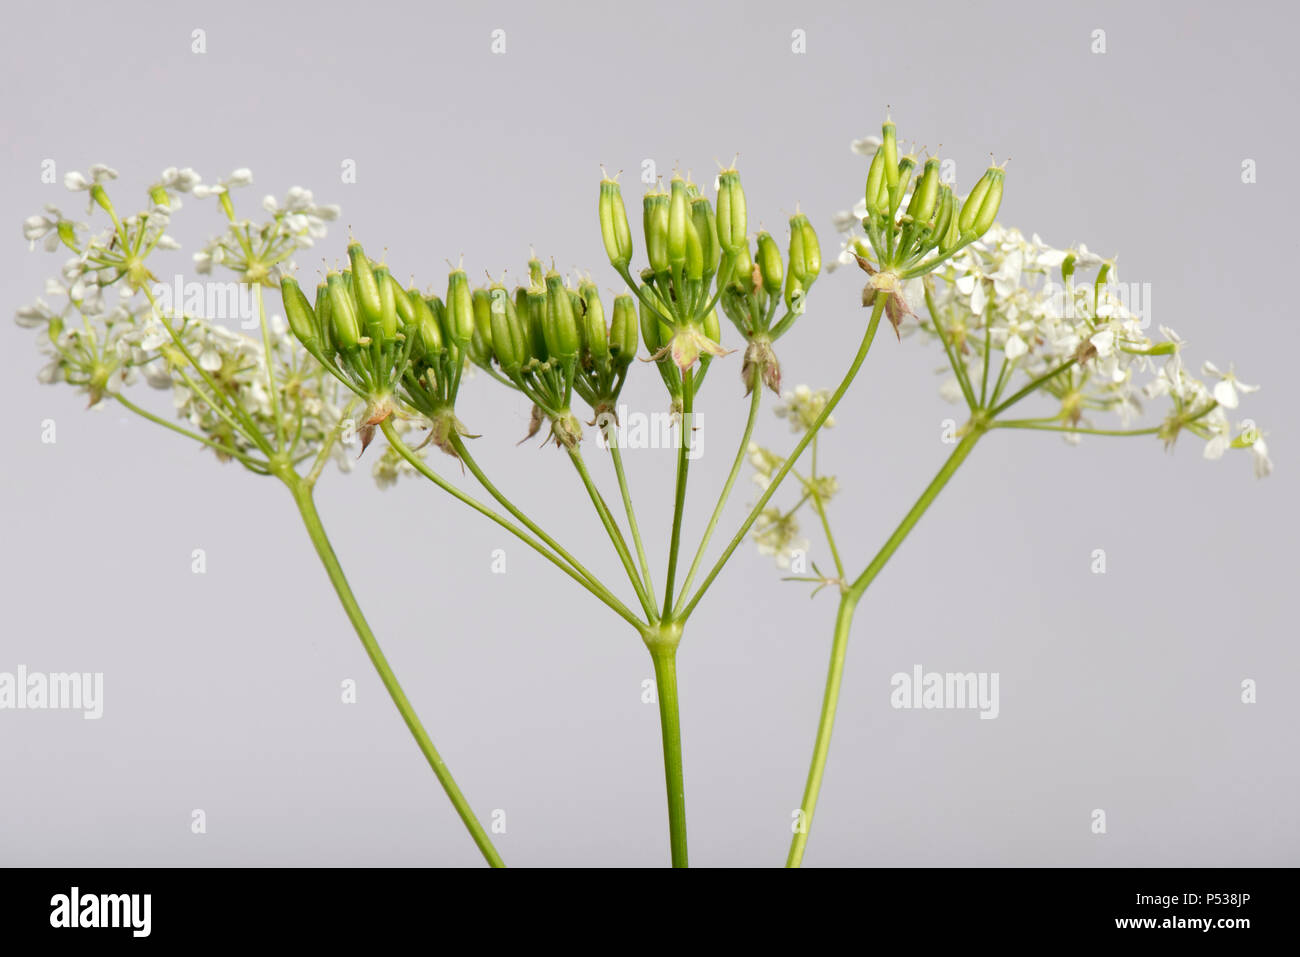 Mucca prezzemolo, Anthriscus sylvestris, ombrella di fiori e baccelli di semina Foto Stock